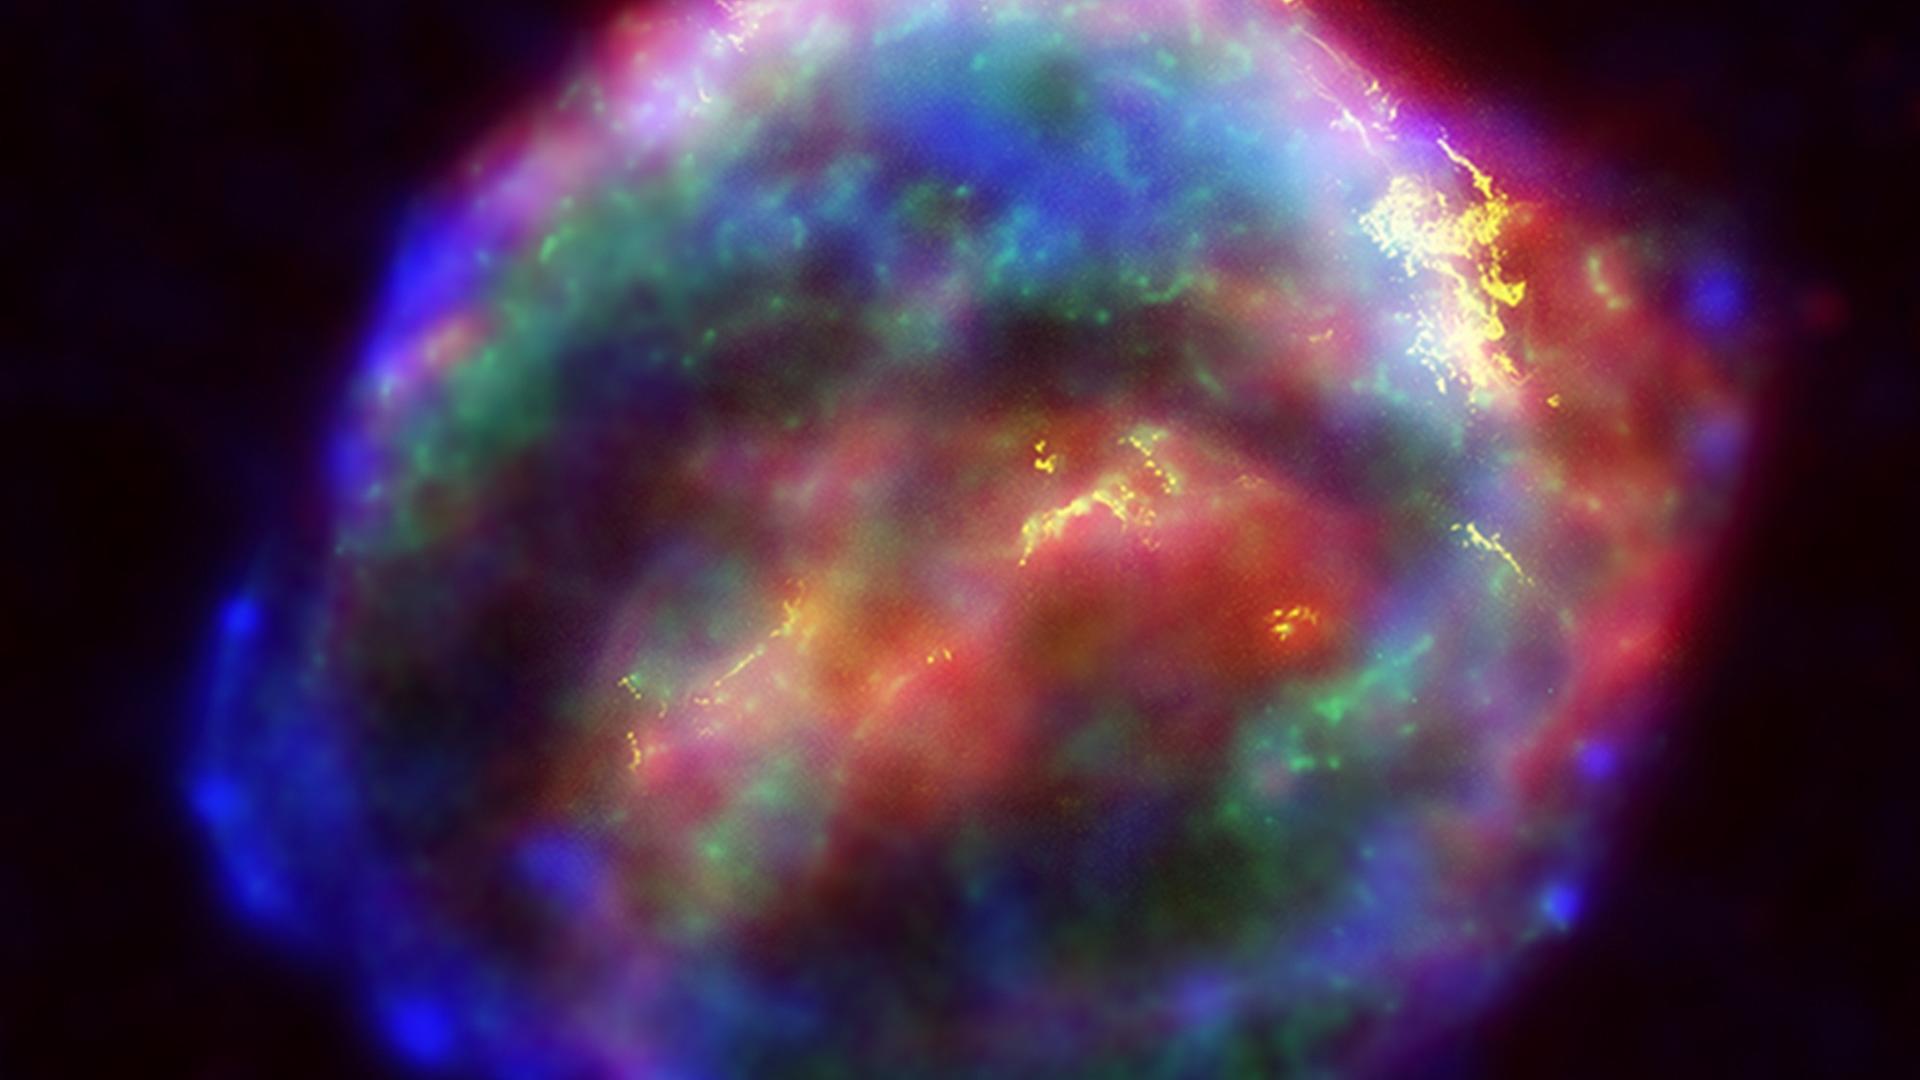 Für dieses Bild des Supernova-Überrests von 1604 wurden Beobachtungen im Röntgen- und sichtbaren Licht kombiniert